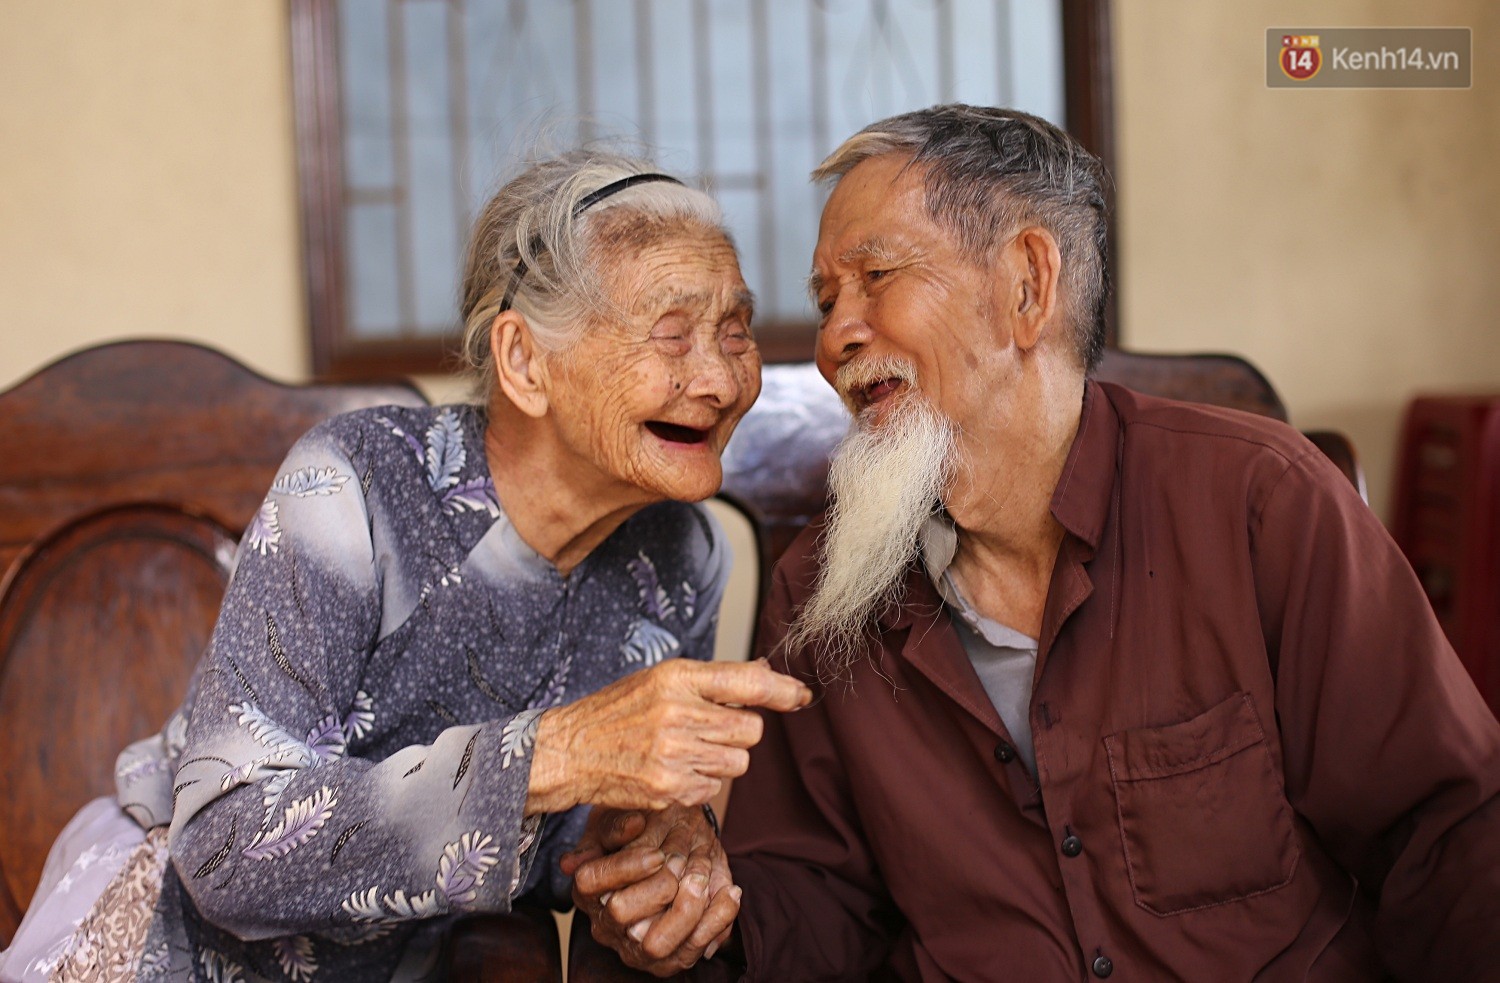 Nhiếp ảnh gia Pháp đã ghi lại khoảnh khắc đầy xúc động của đôi vợ chồng 94 tuổi. Họ là sự hiện thân của tình yêu và sự gắn kết chặt chẽ. Xem hình ảnh này để tìm hiểu thêm về cách họ vượt qua nhiều khó khăn để giữ được tình yêu và cuộc sống của mình.